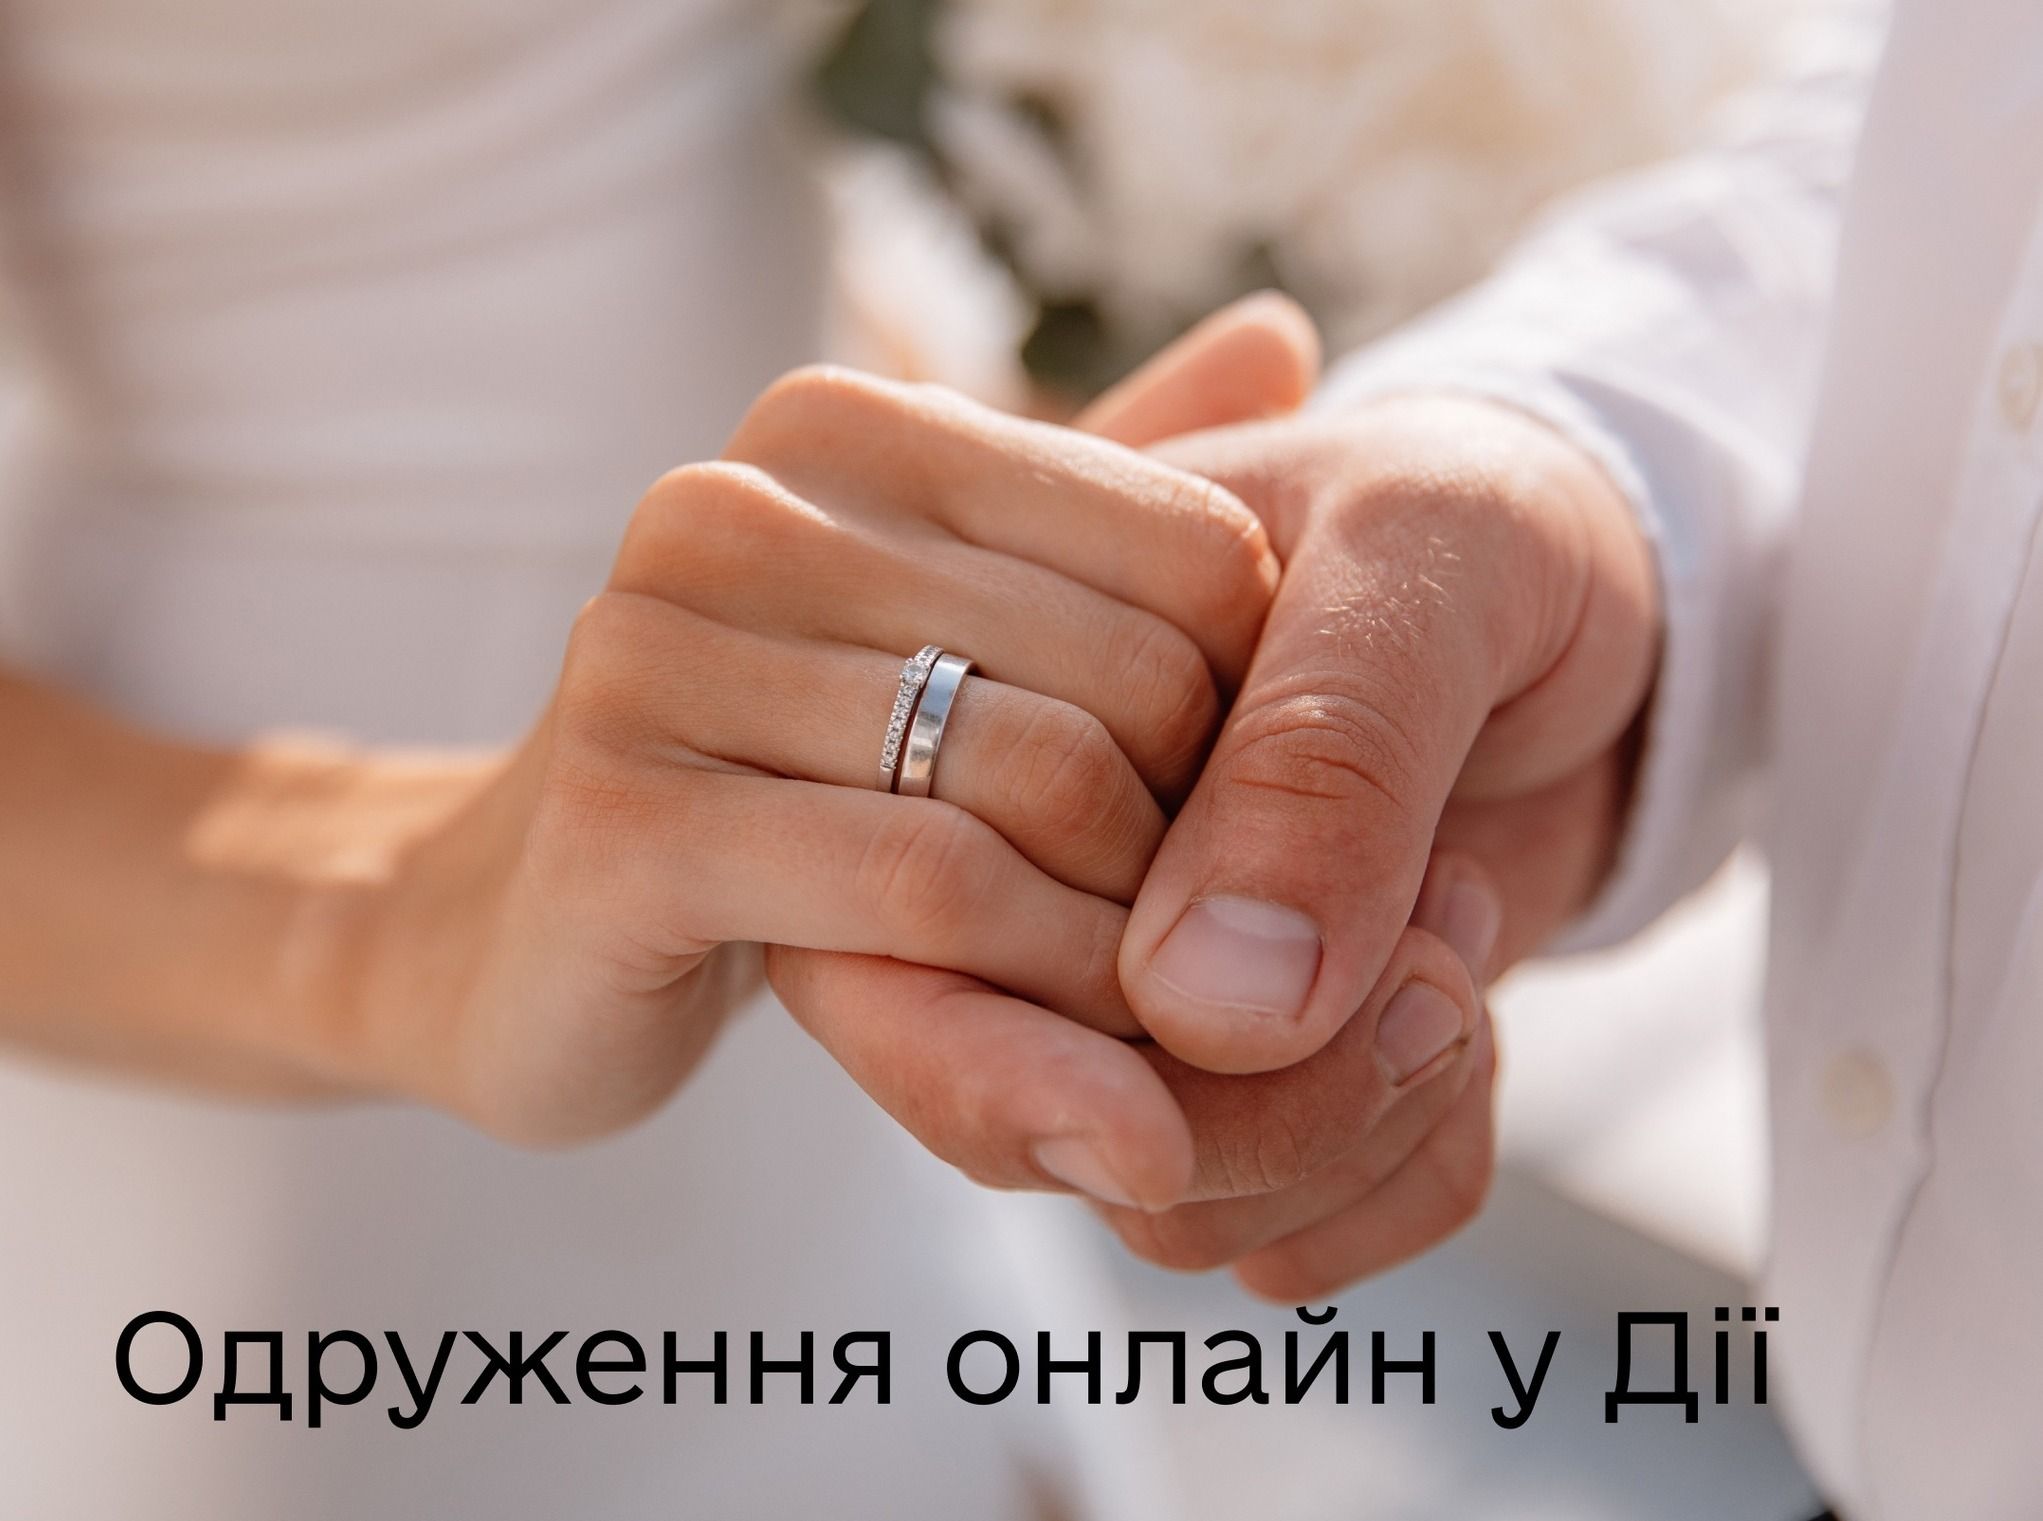 Весілля в «Дії»: одружитись можна в пару кліків